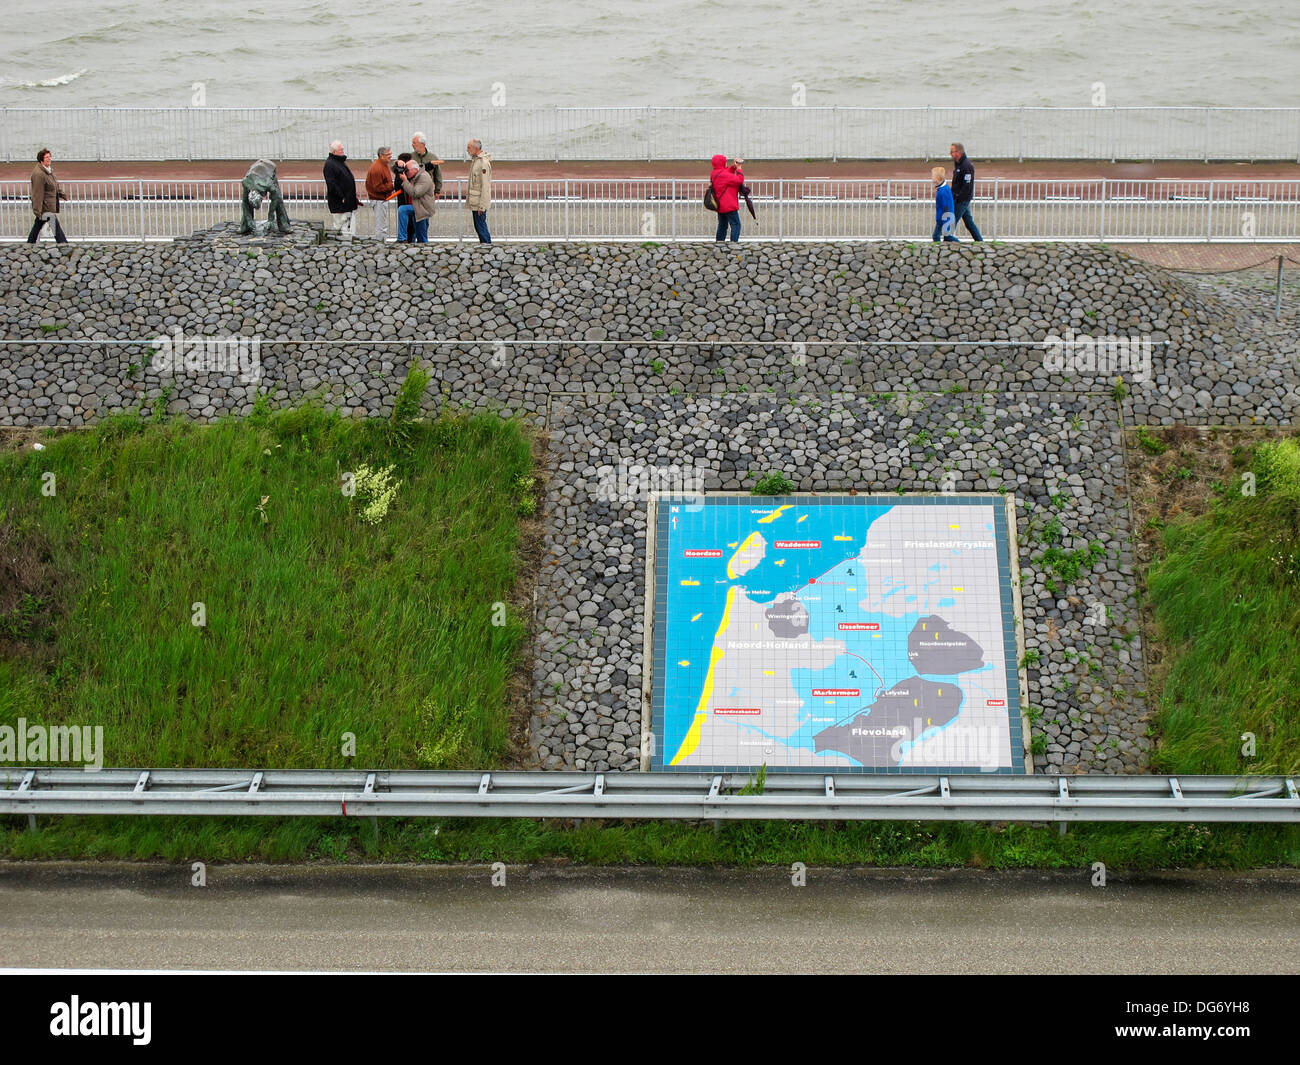 El Afsluitdijk / Alojamiento Dam, calzada principal en los Países Bajos, parte de las grandes obras de Zuiderzee, Represar el Zuiderzee Foto de stock